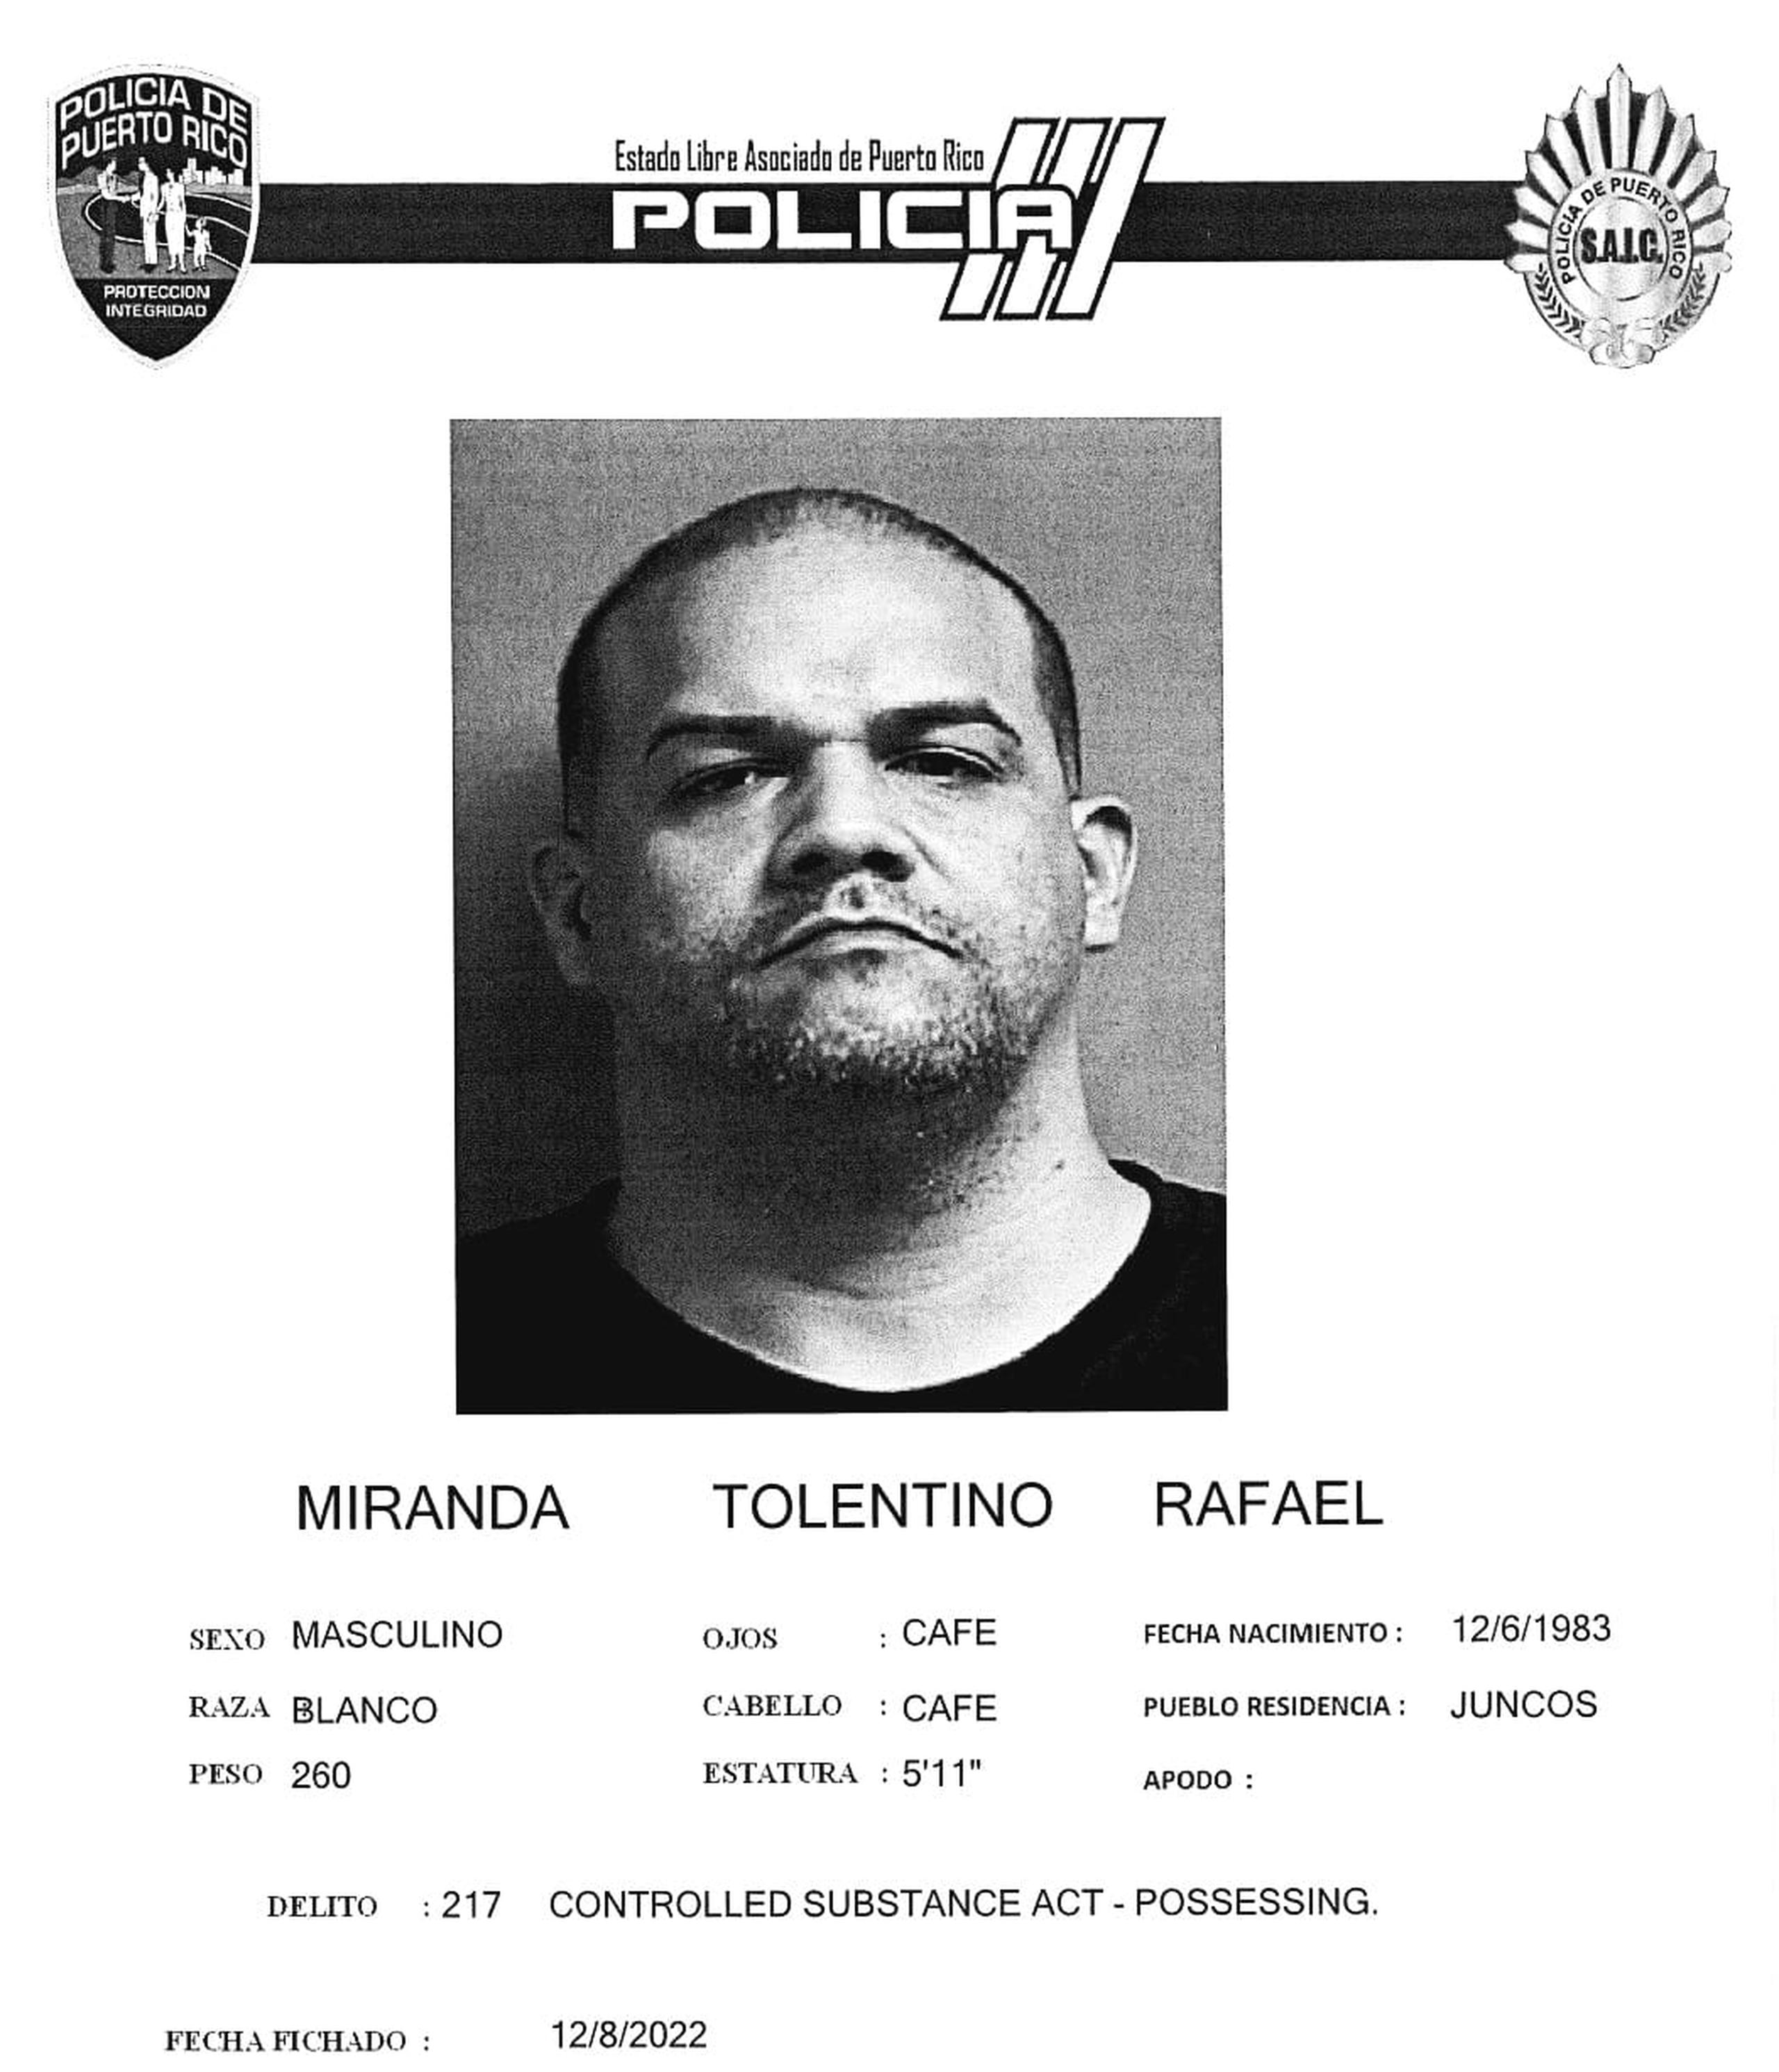 Rafael Miranda Tolentino de 38 años, alias Kikuet, ha sido identificado por el Negociado de la Policía como sospechoso de varios asesinatos.